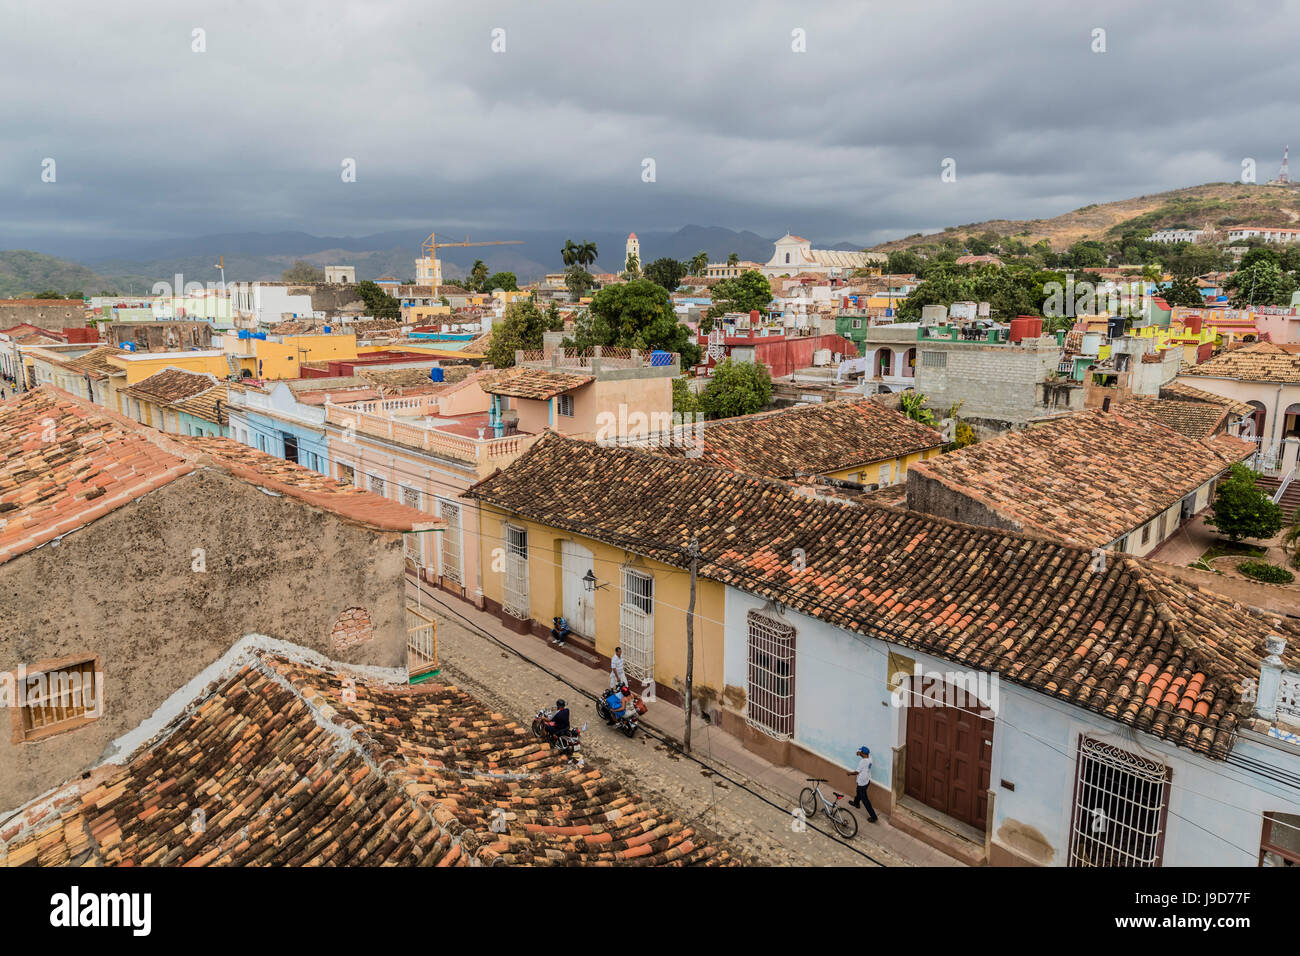 Une vue de la Plaza Mayor, Trinidad, Site du patrimoine mondial de l'UNESCO, Cuba, Antilles, Caraïbes, Amérique Centrale Banque D'Images